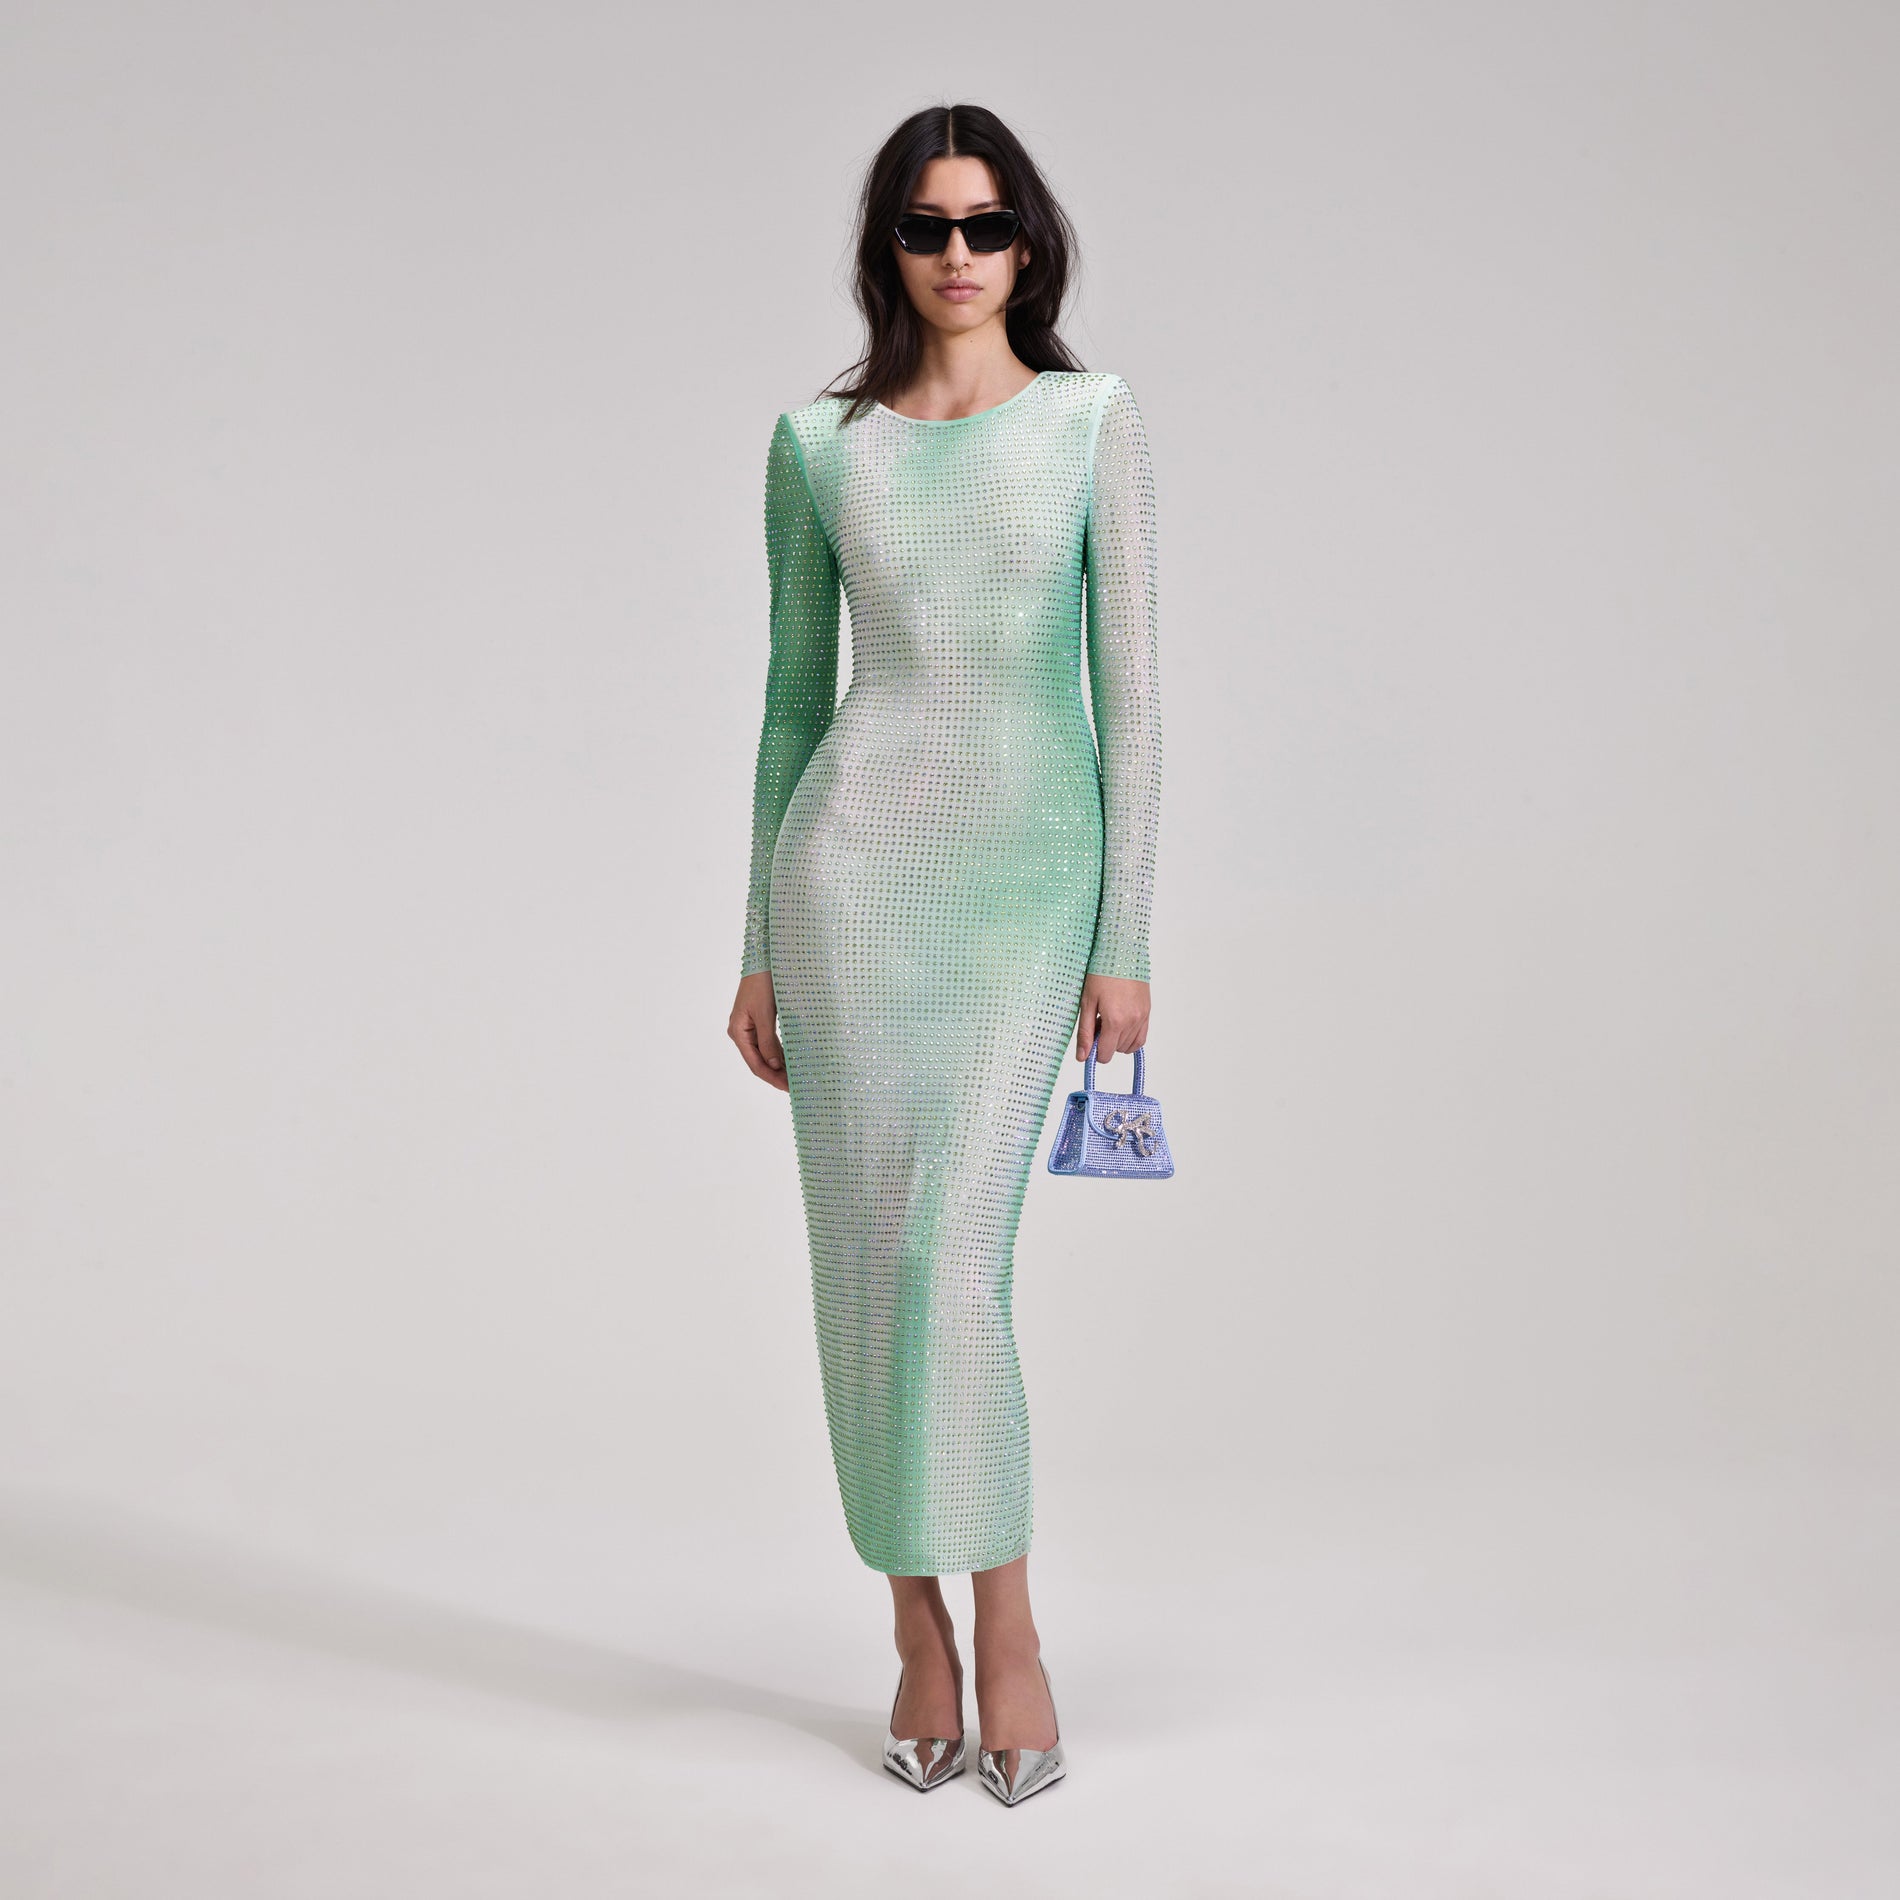 A woman wearing the Green Contour Print Midi Dress